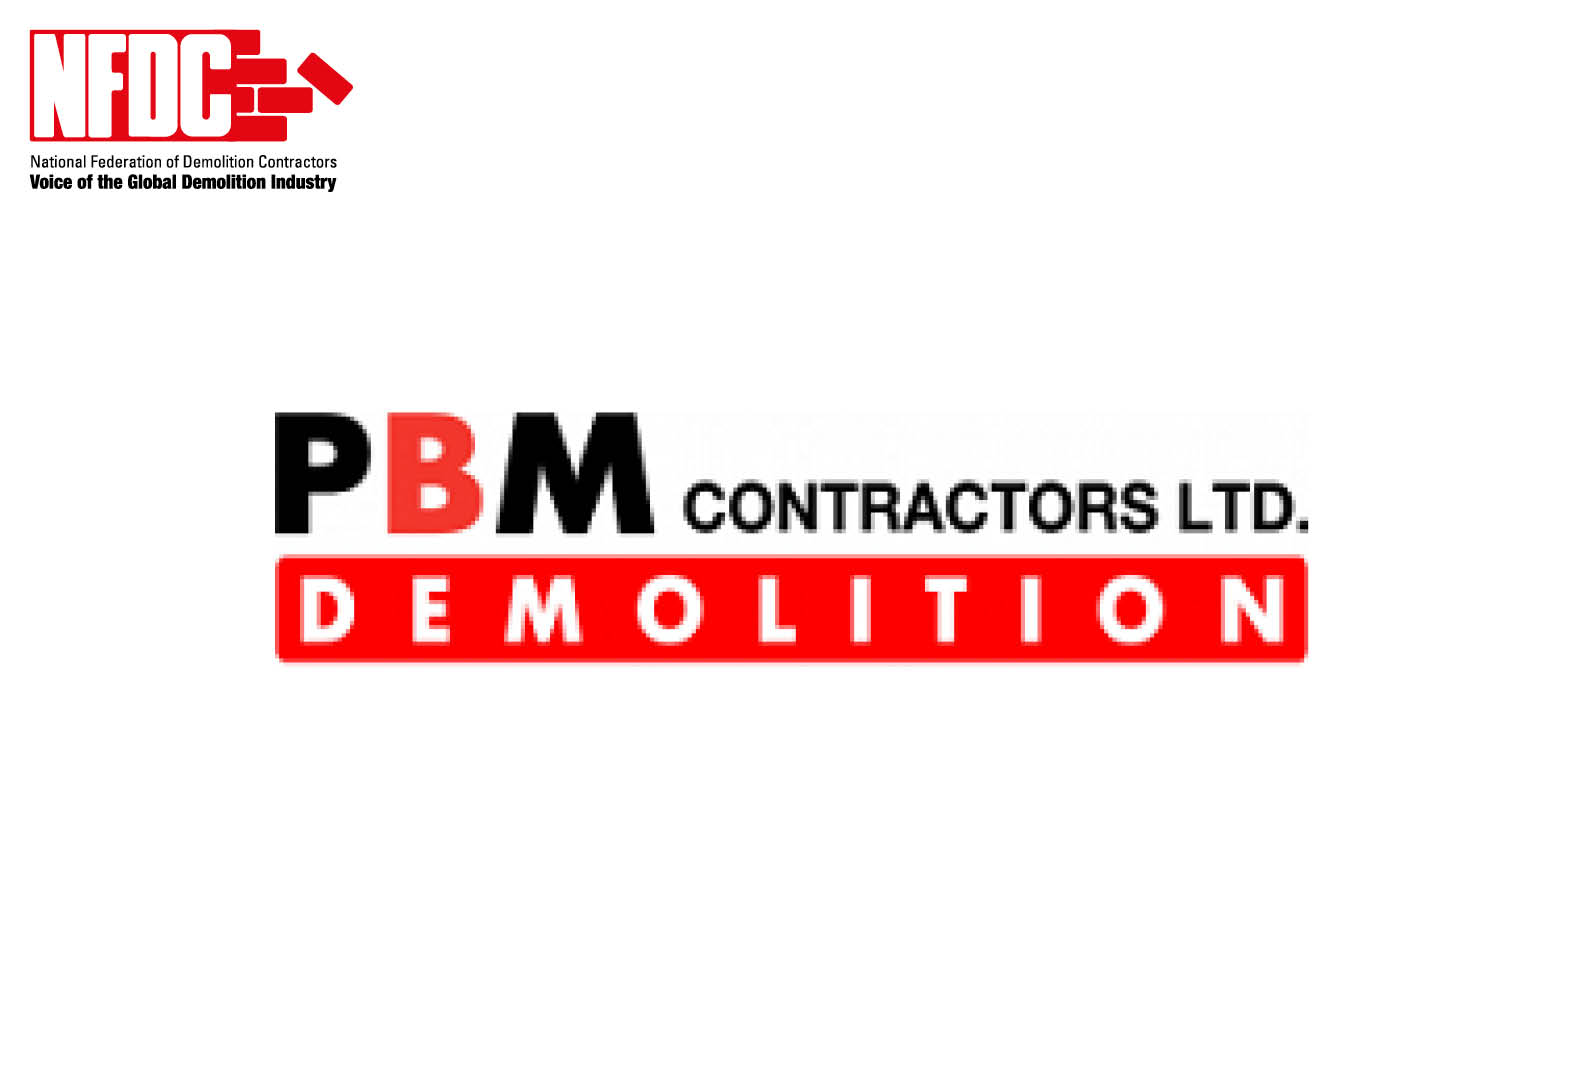 P B M Contractors Ltd